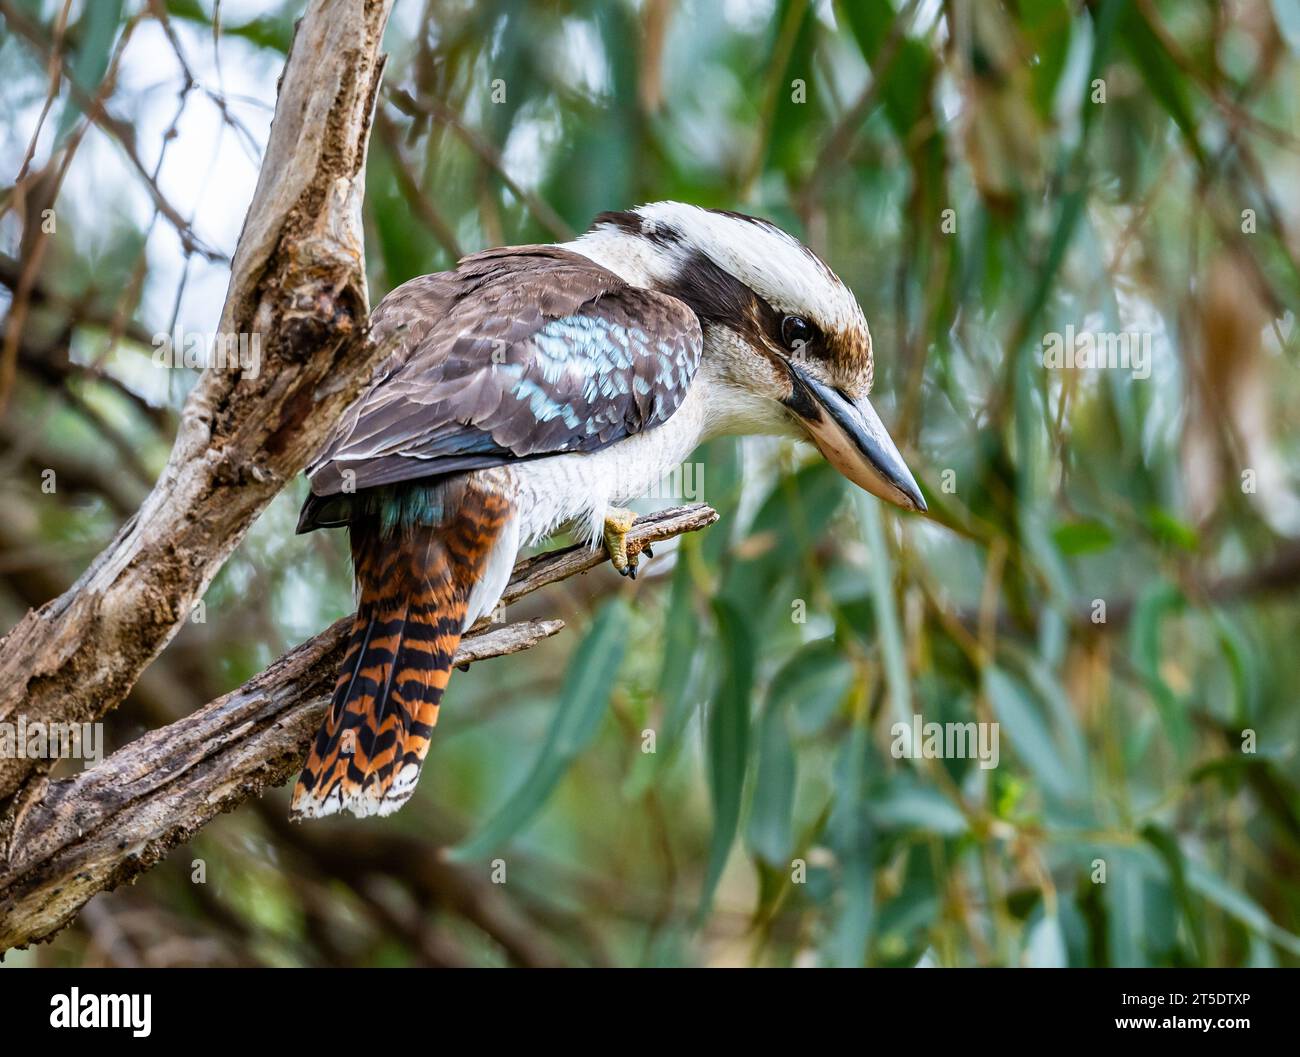 Un Kookaburra riant (Dacelo novaeguineae) perché sur une branche. Australie. Banque D'Images